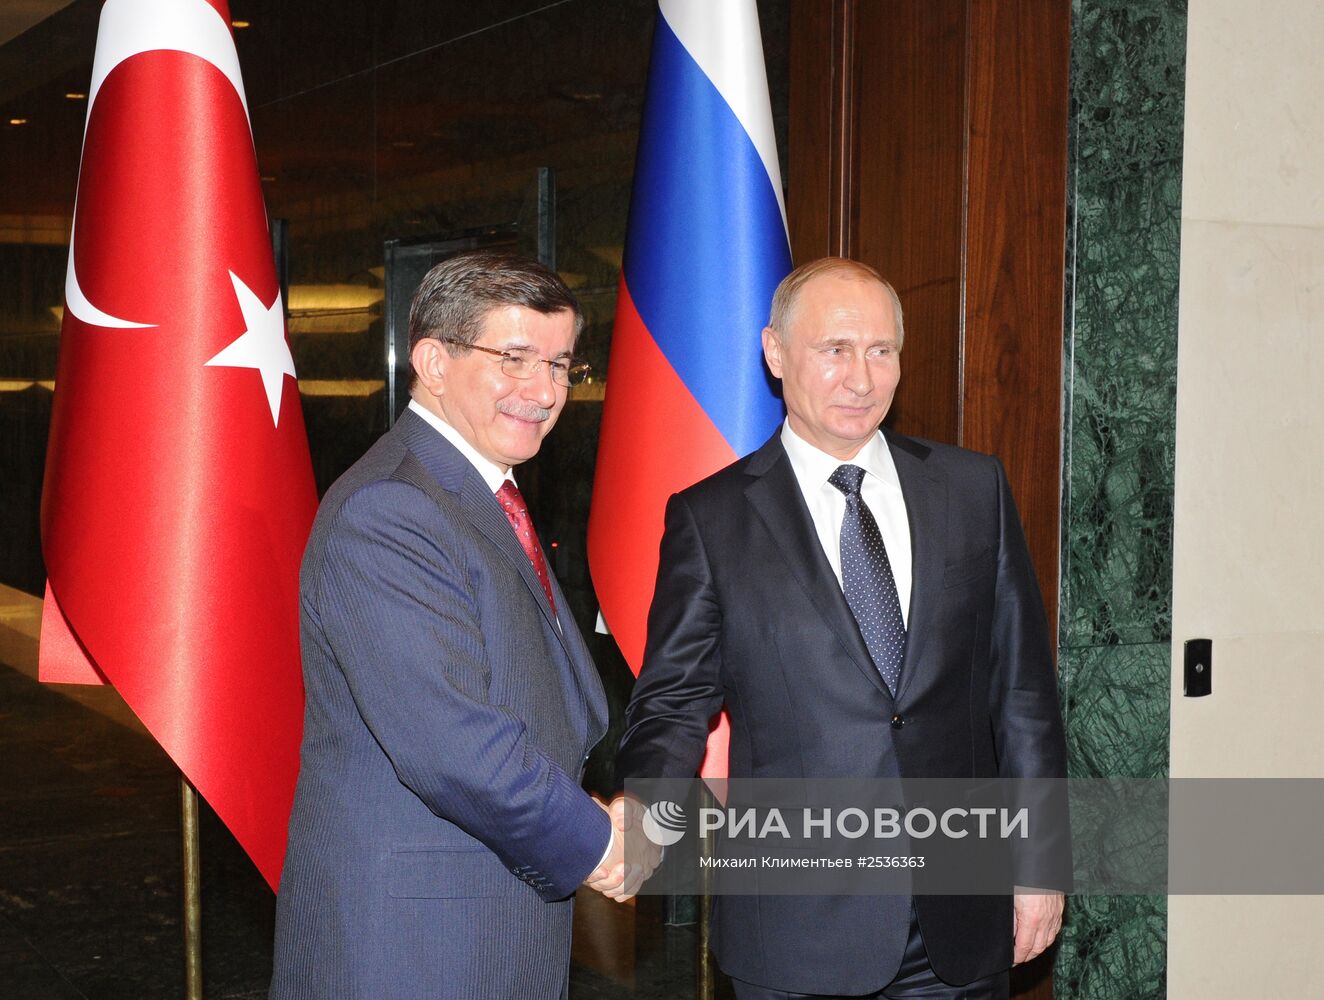 Рабочий визит В.Путина в
Турцию